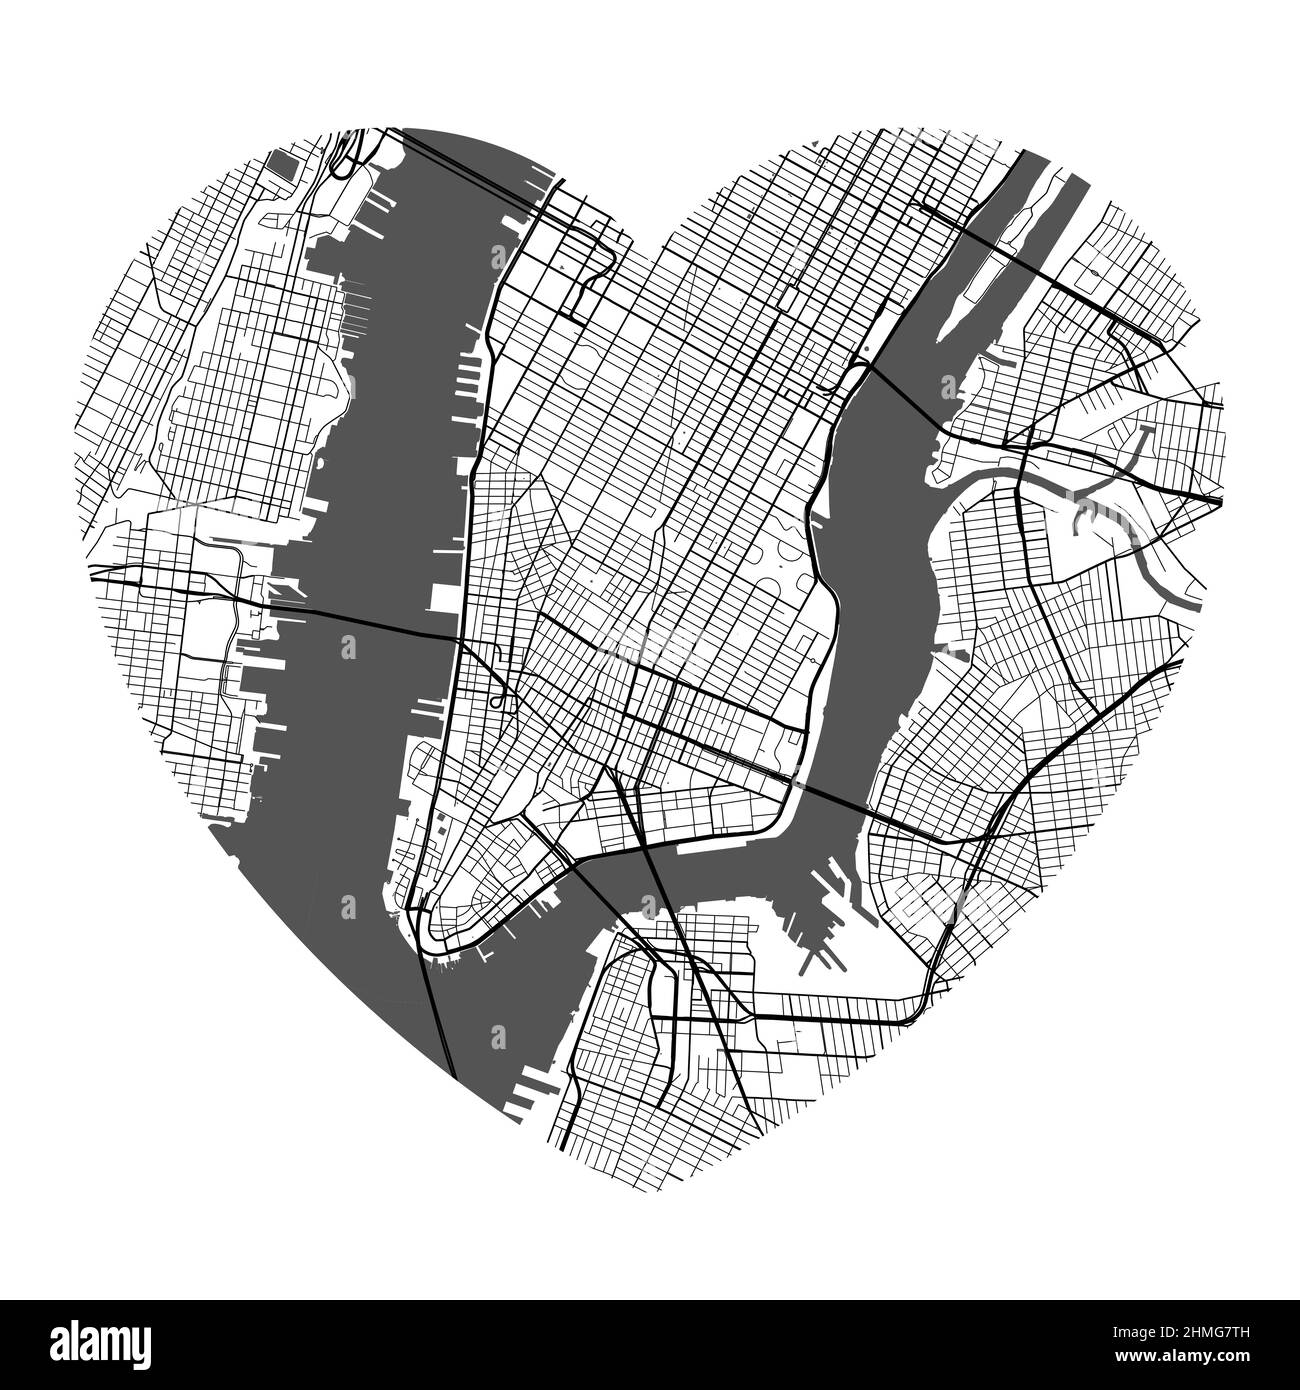 Vektorkarte der Stadt New York in Herzform. Schwarz-weiße Farbdarstellung. Straßen, Straßen, Flüsse. Stock Vektor